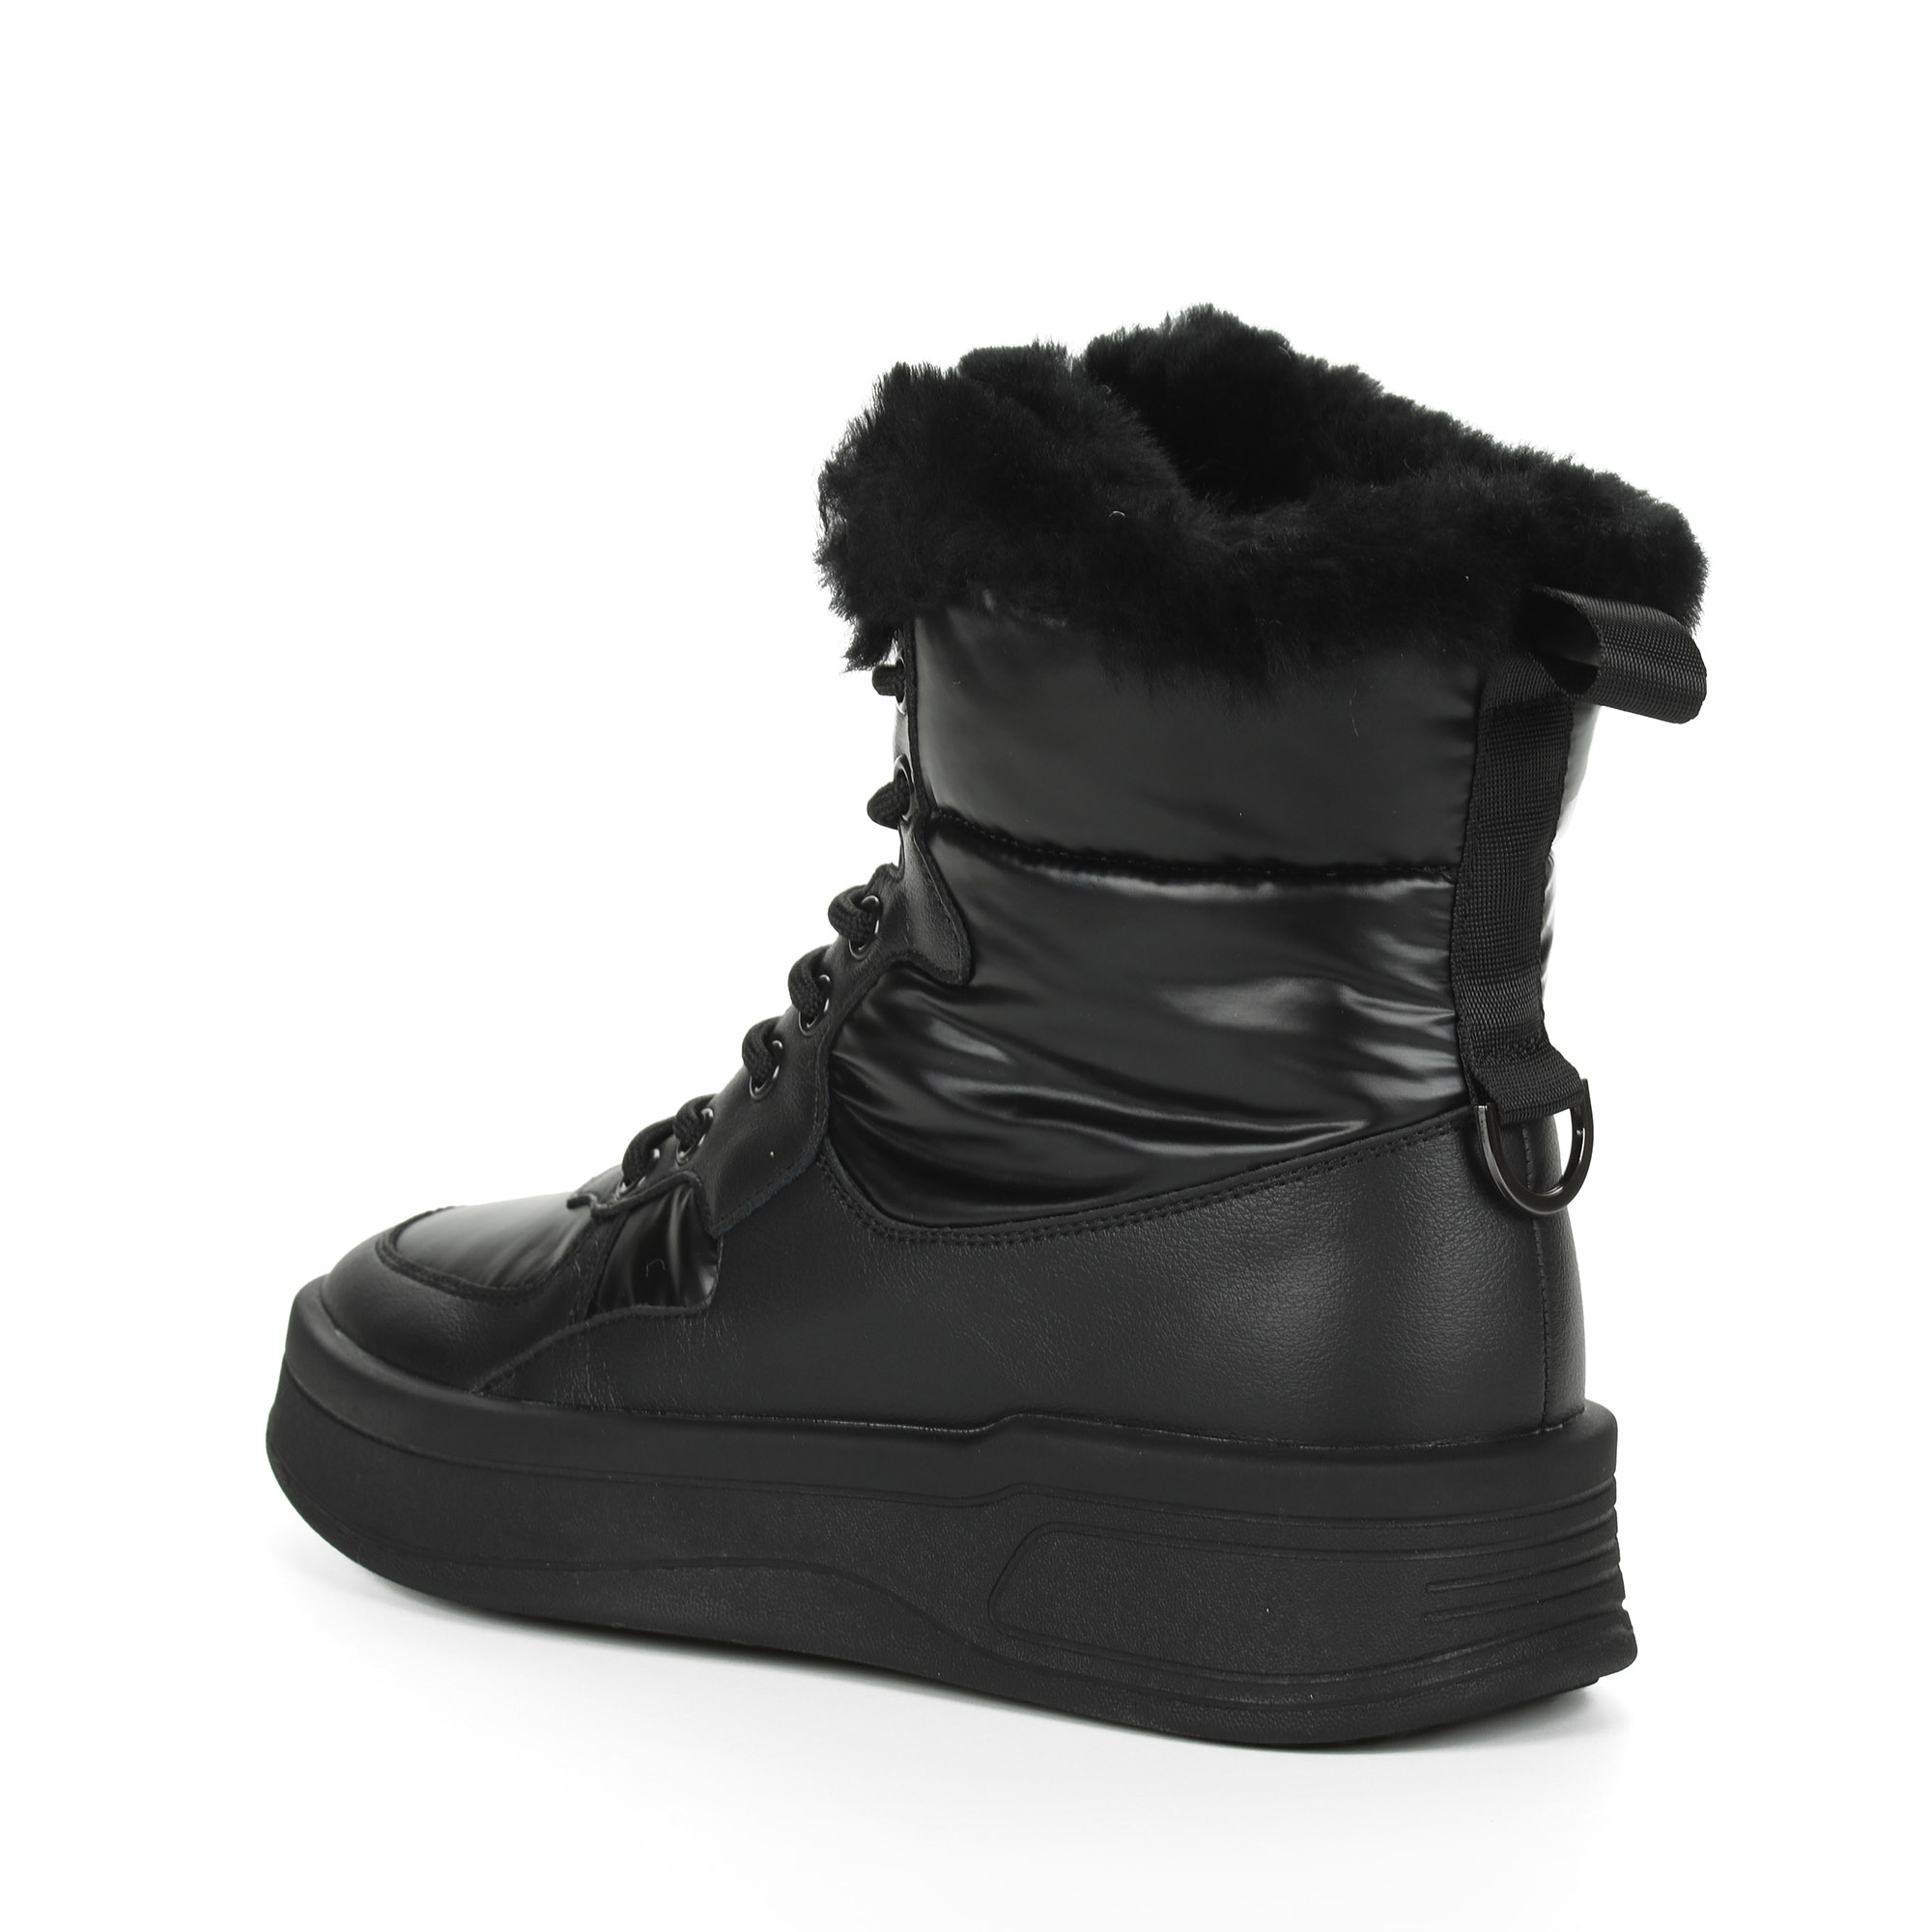 Черные высокие кроссовки из комбинированных материалов смеховой опушкой на подкладке из натуральной шерсти на утолщенной платформе Respect, размер 37, цвет черный - фото 5